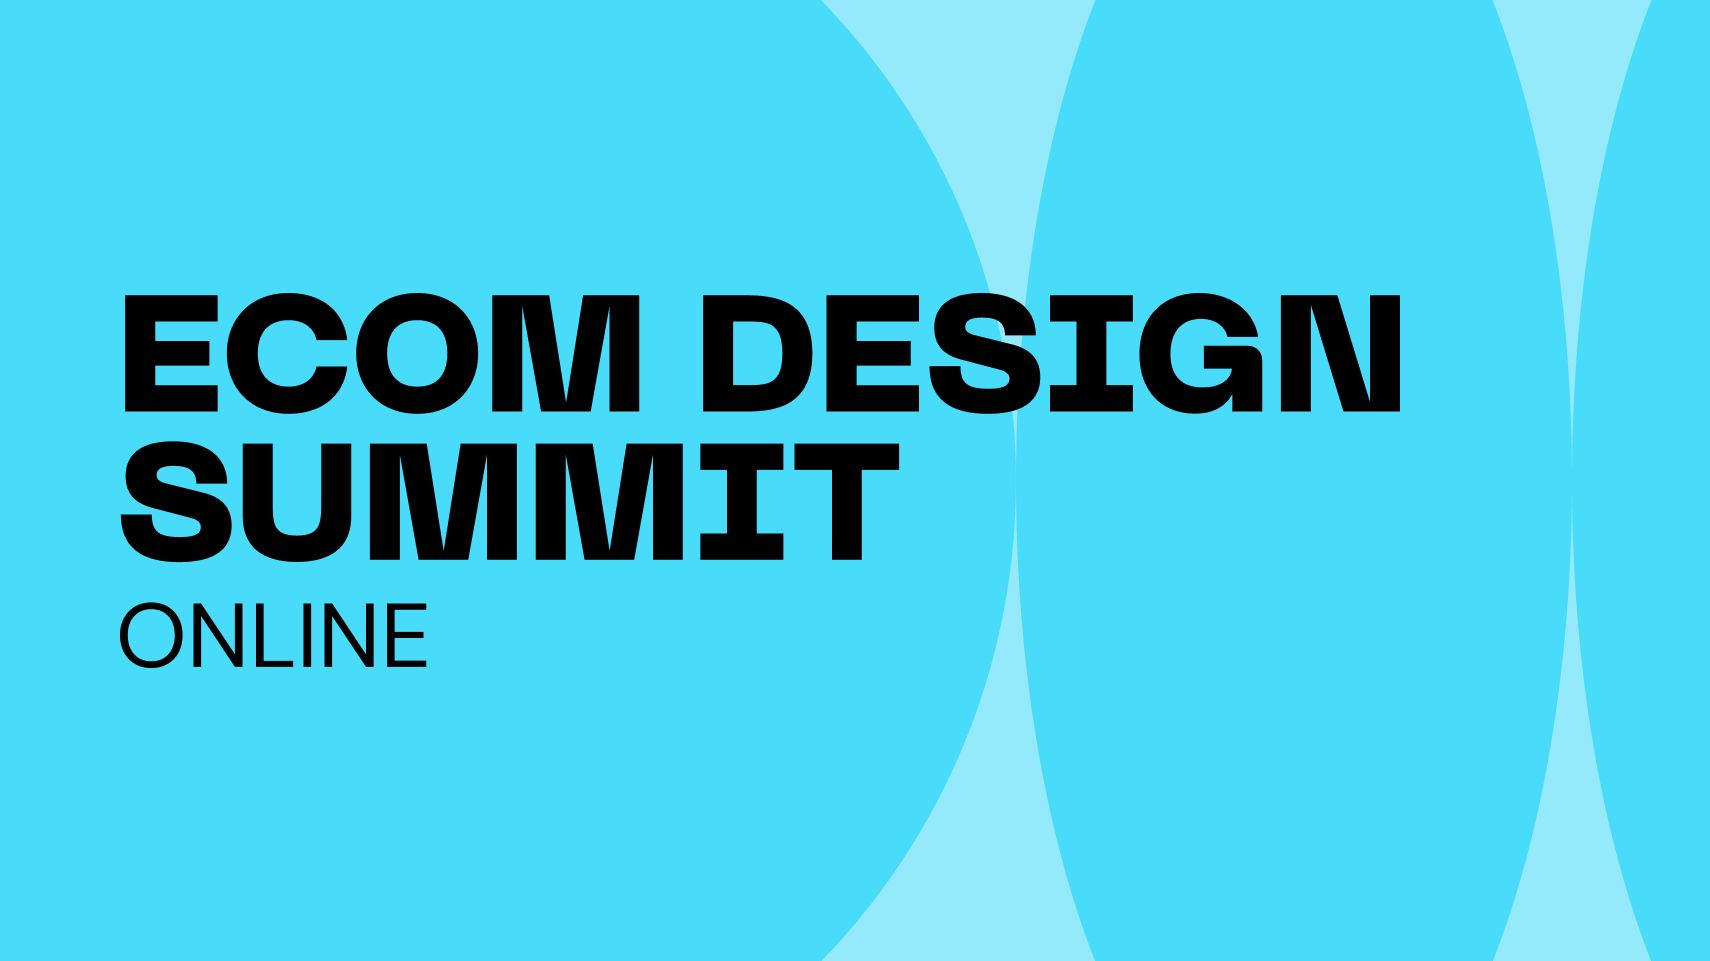 eCom Design Summit Online, Online Event